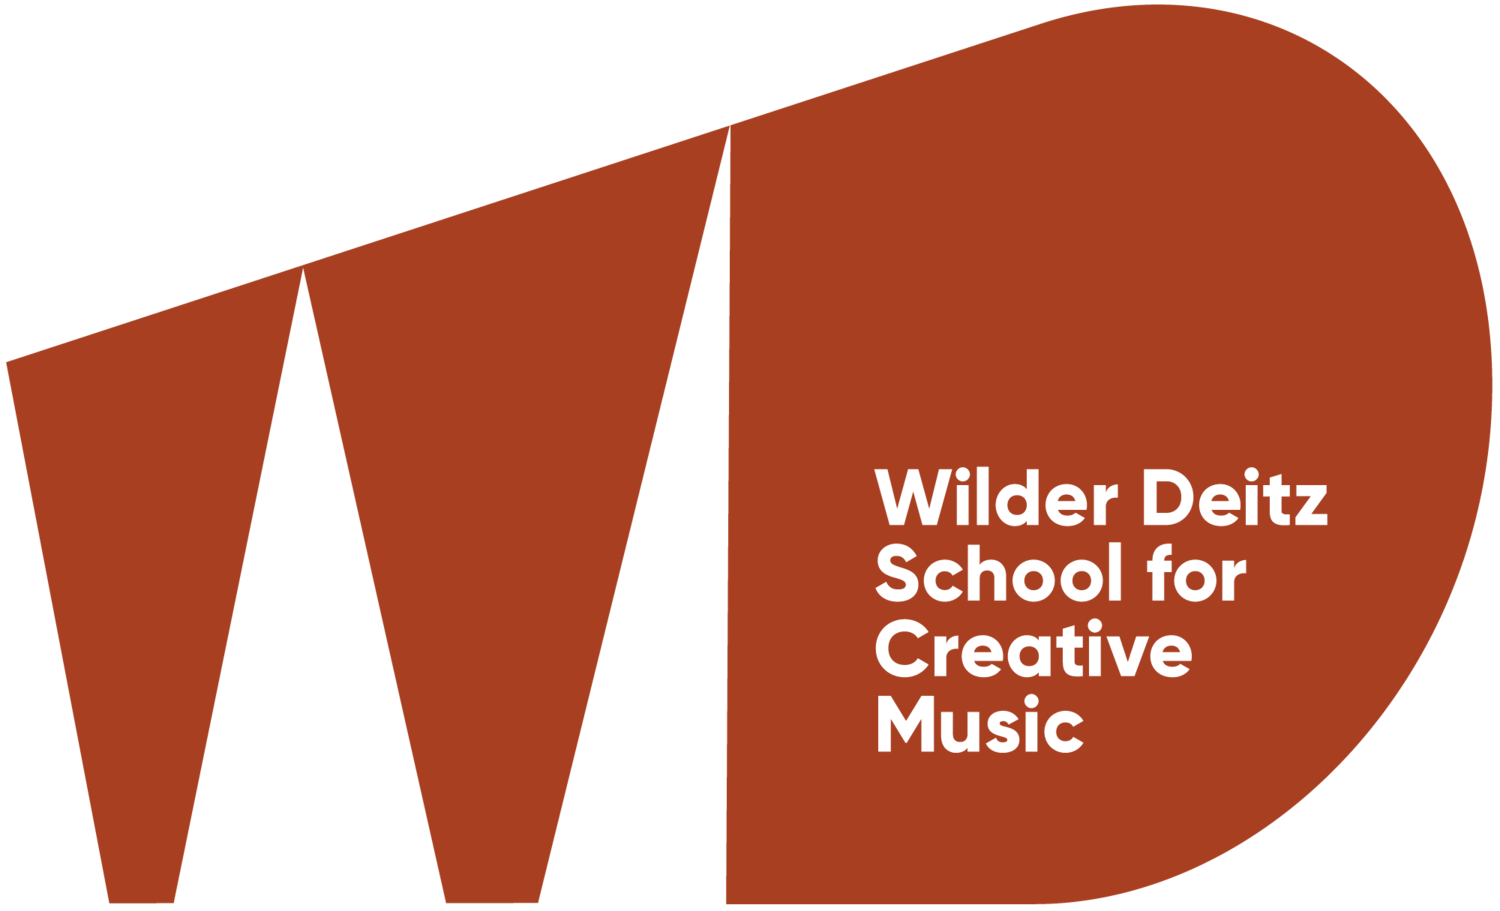 Wilder Deitz School for Creative Music